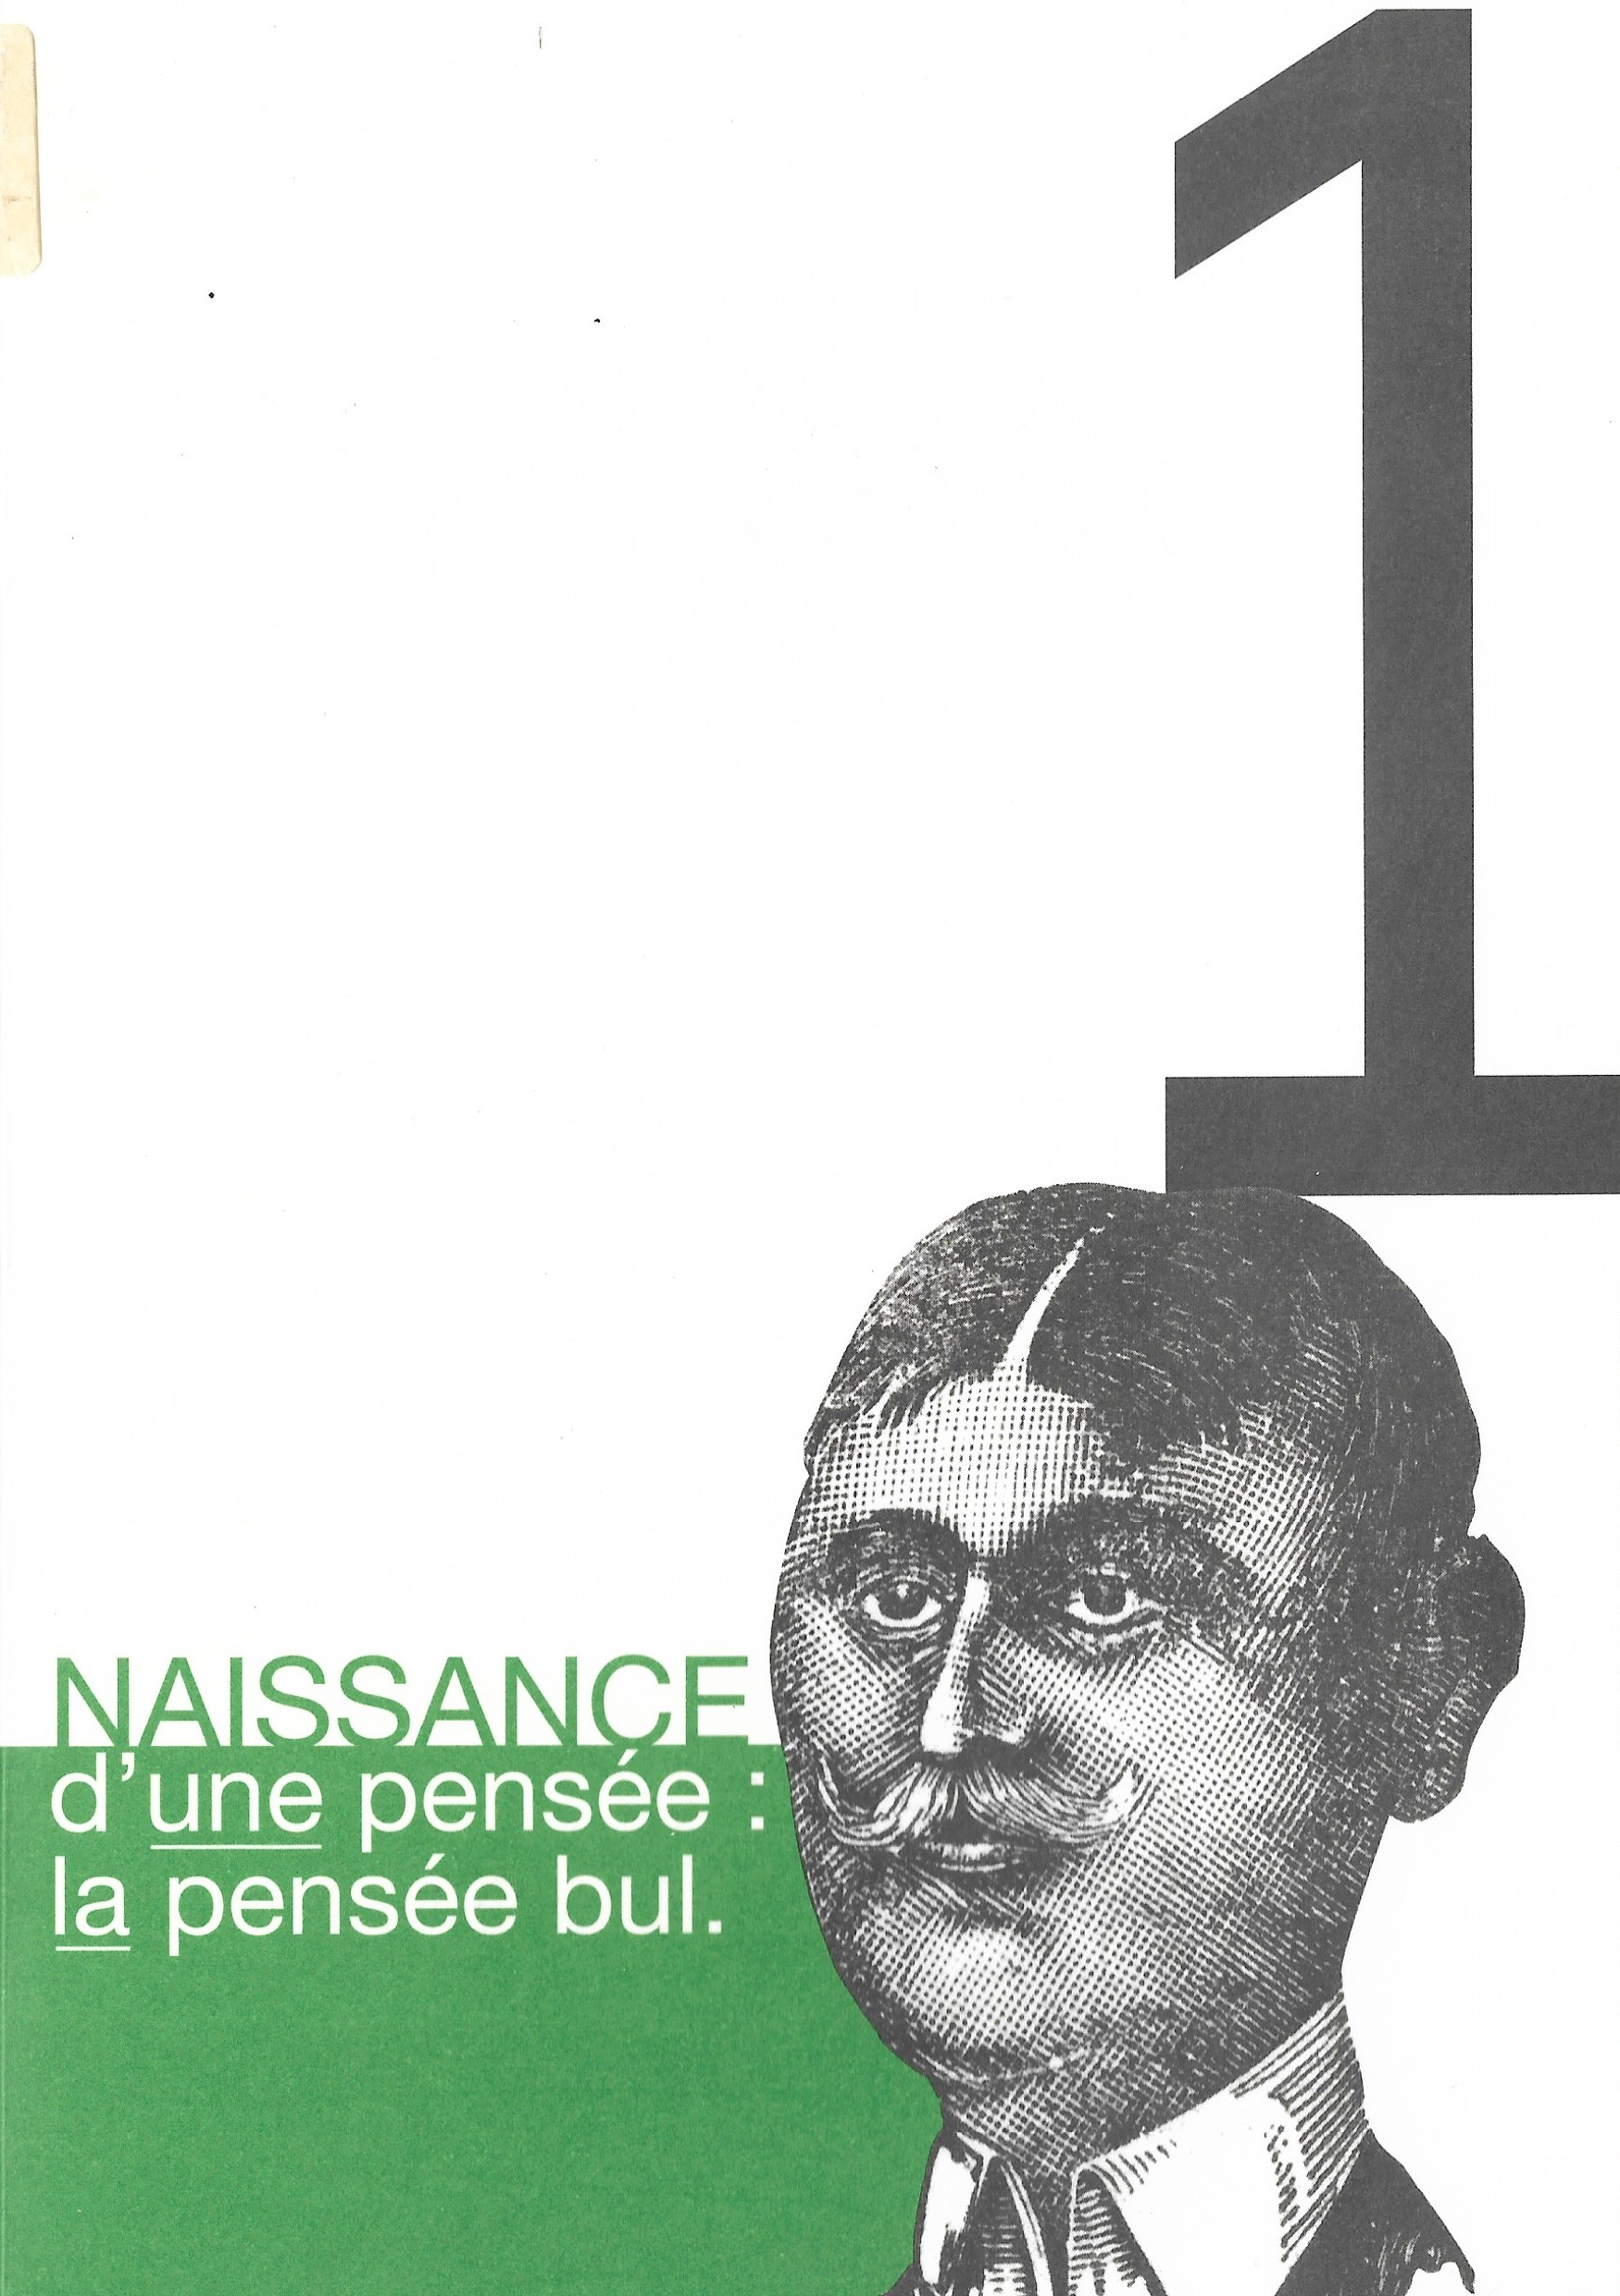 30. « Naissance d’une pensée : la pensée bul. », 2009, 56 p., 1 €